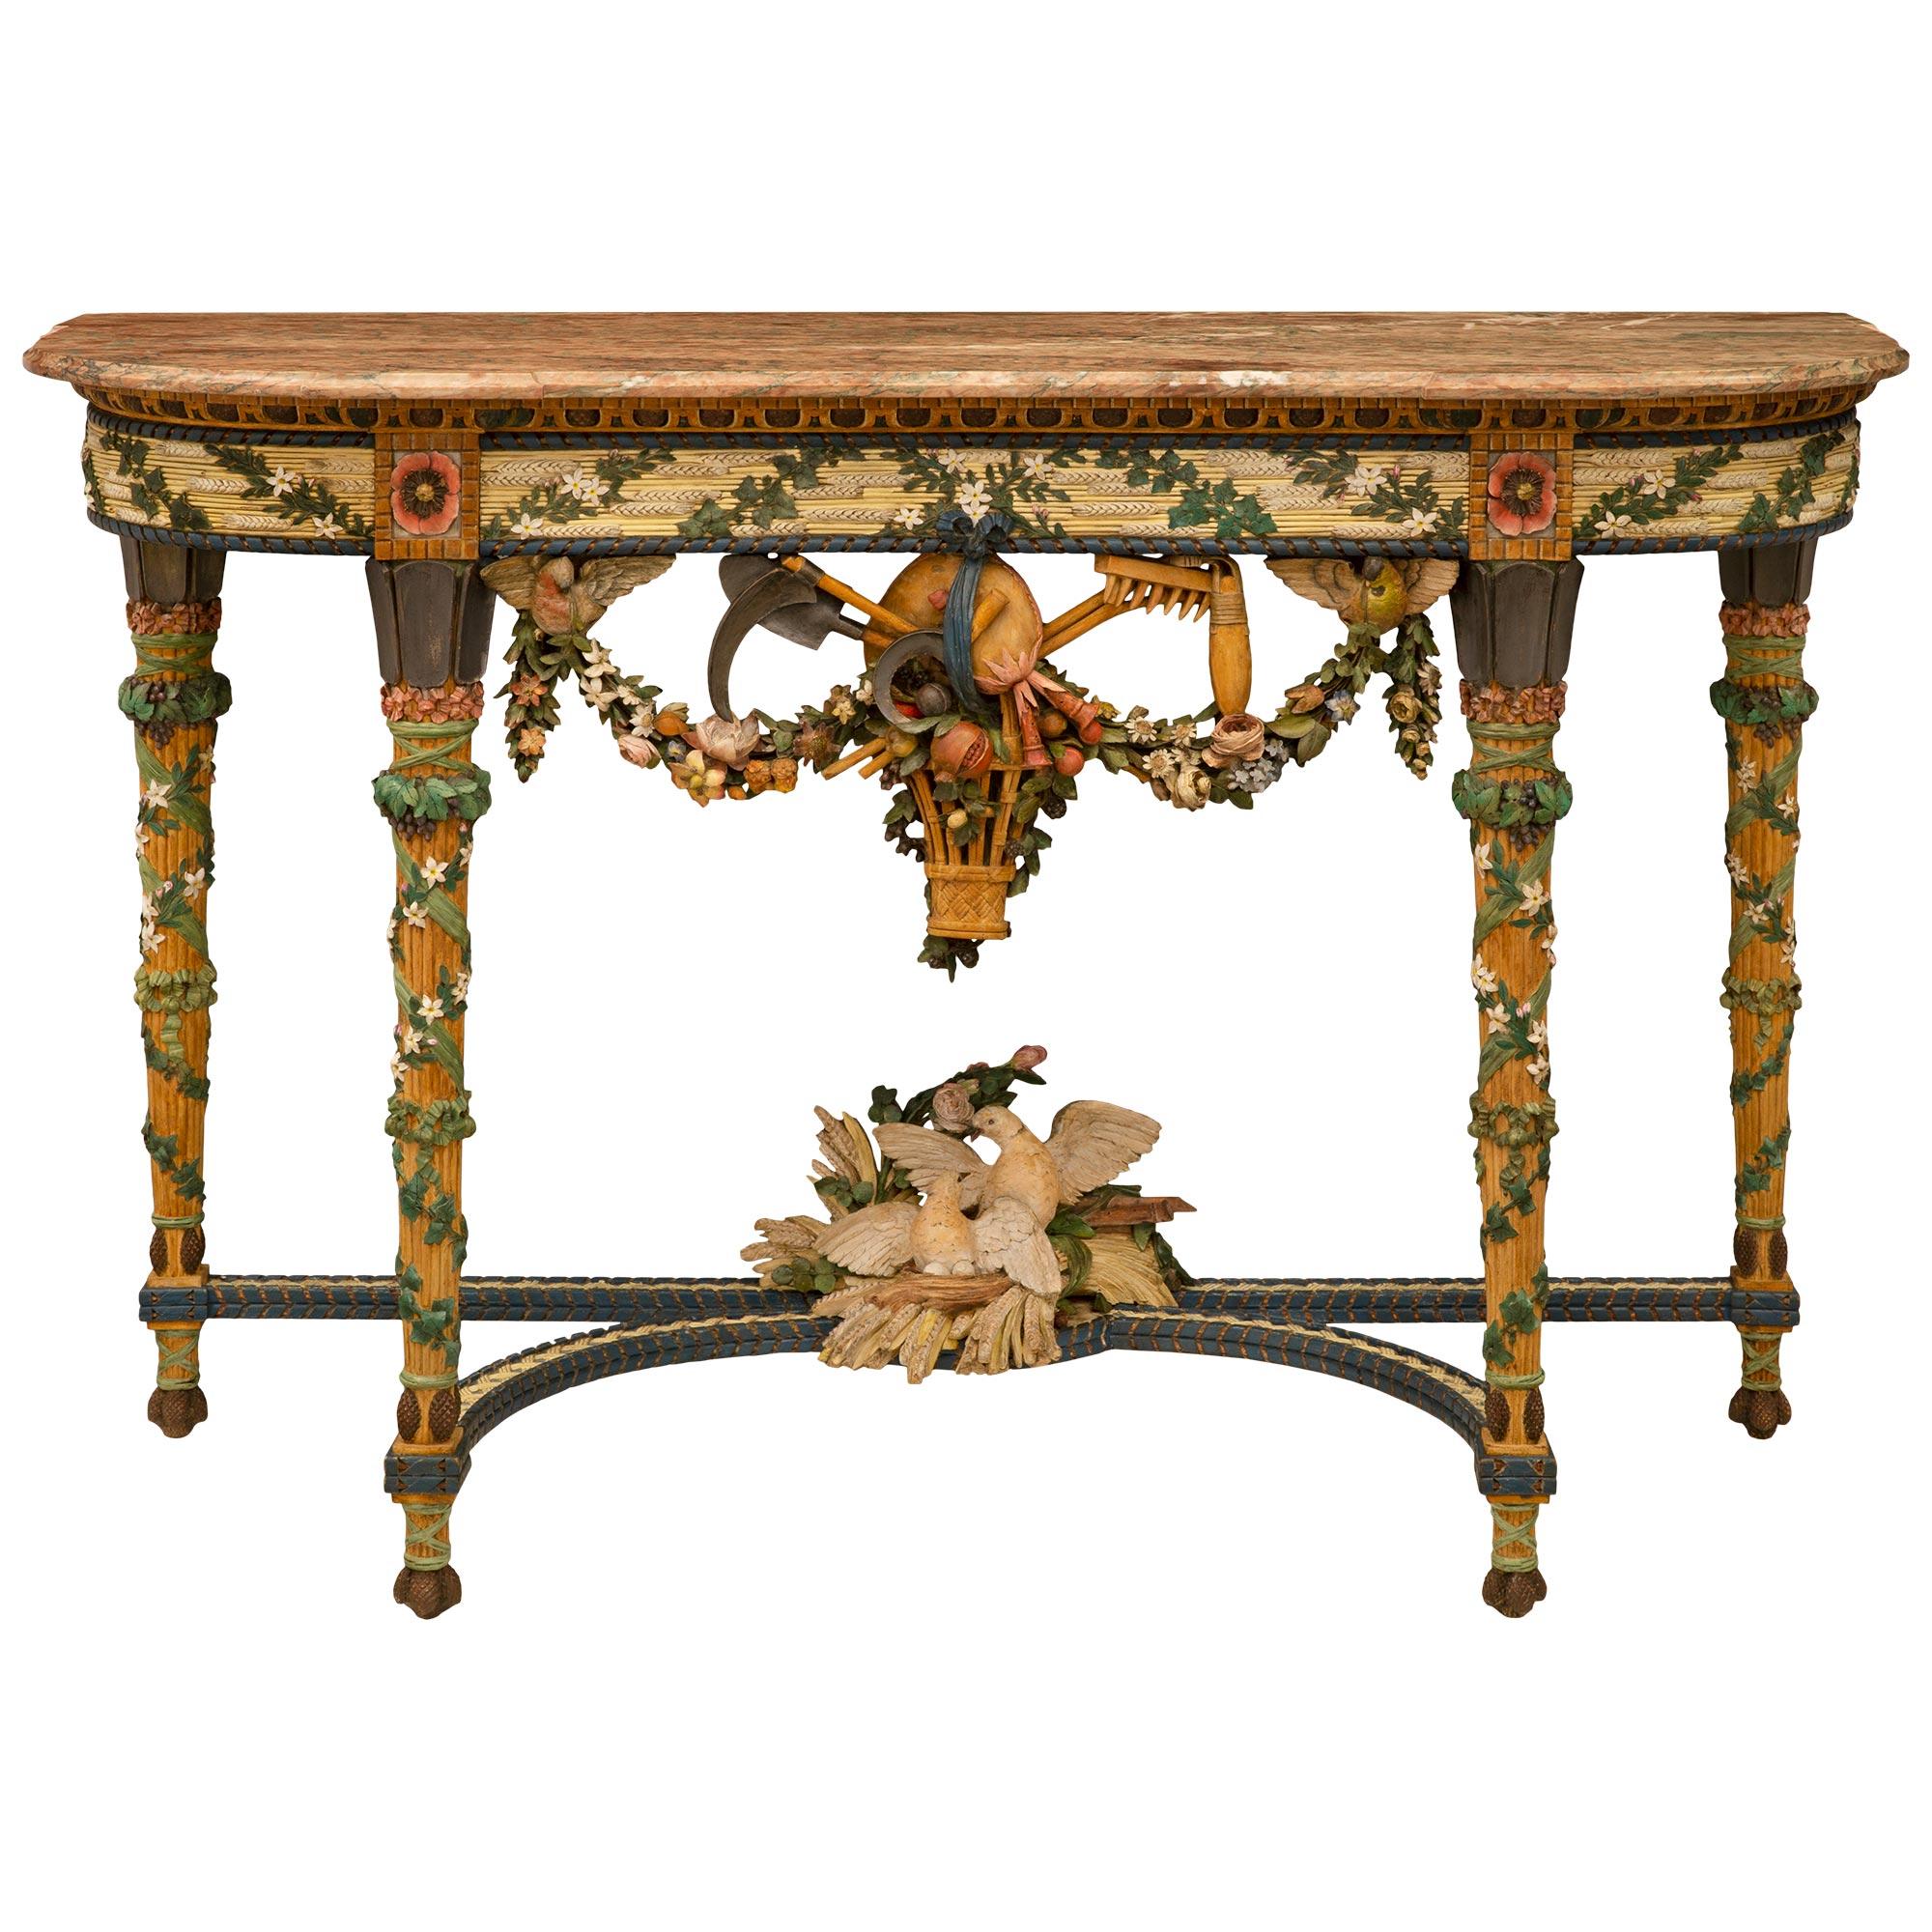 Étonnante console en bois patiné et marbre Campan Rubané du XIXe siècle de style Louis XVI, extrêmement décorative. La console repose sur d'élégants pieds circulaires cannelés et fuselés, décorés de belles guirlandes et de fleurs épanouies. Les